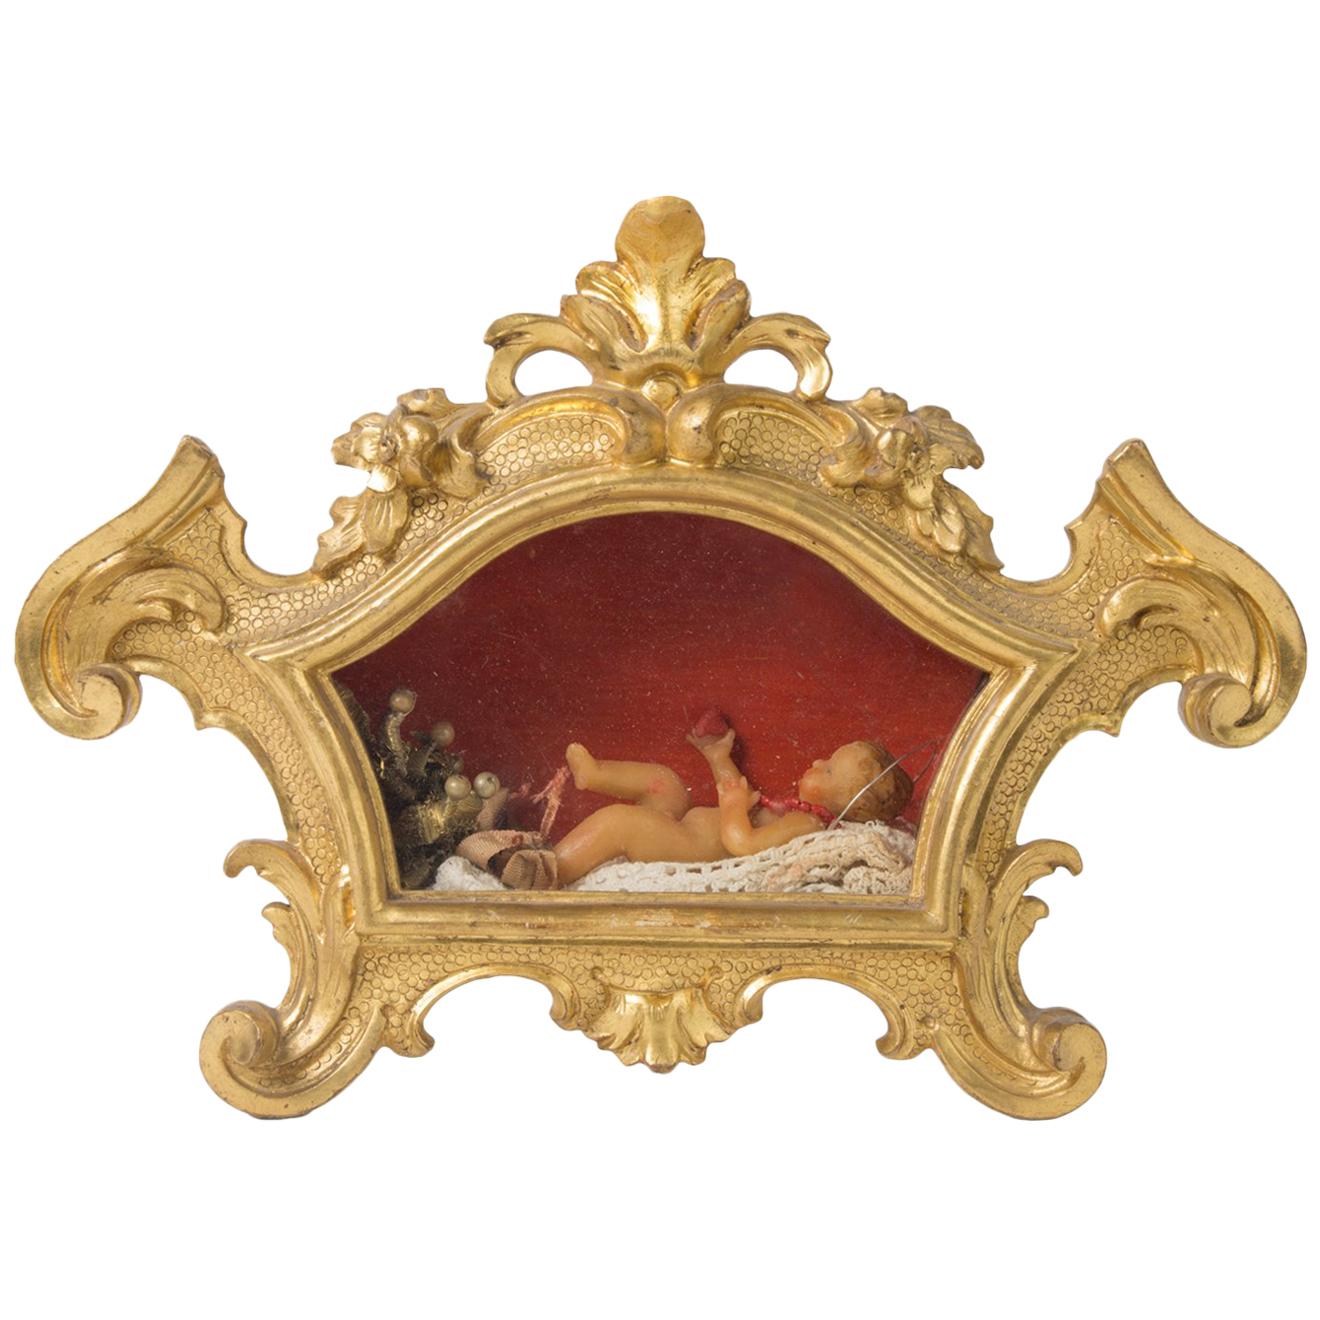 Baby Jesus Christ in Wachs in einem vergoldeten Reliquary aus dem frühen 19. Jahrhundert